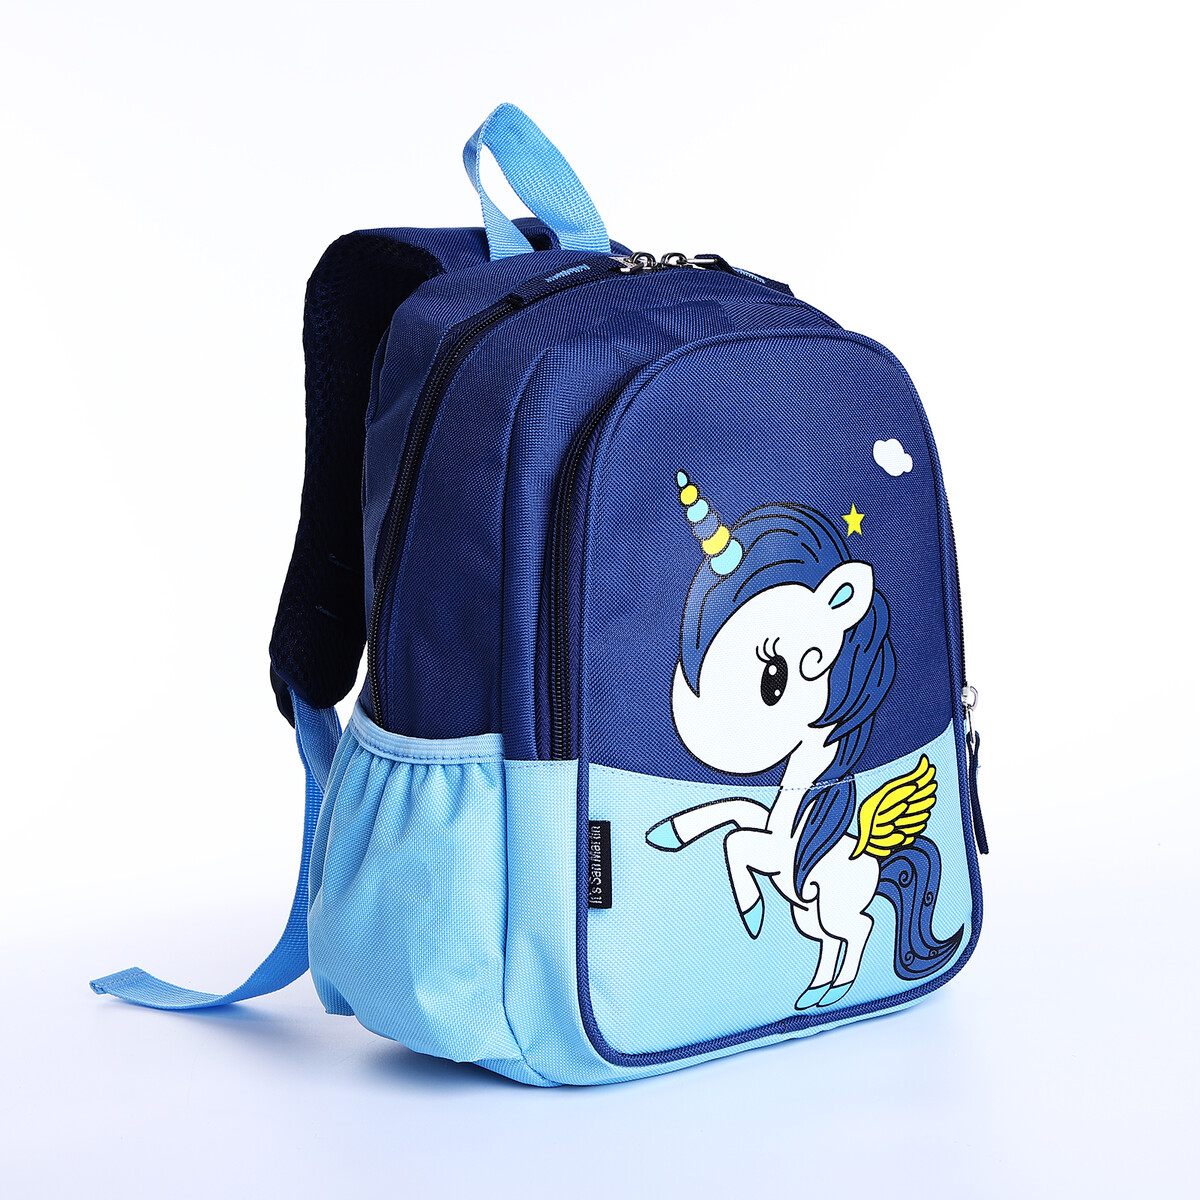 Рюкзак детский на молнии, наружный карман, цвет синий/голубой рюкзак на молнии наружный карман синий